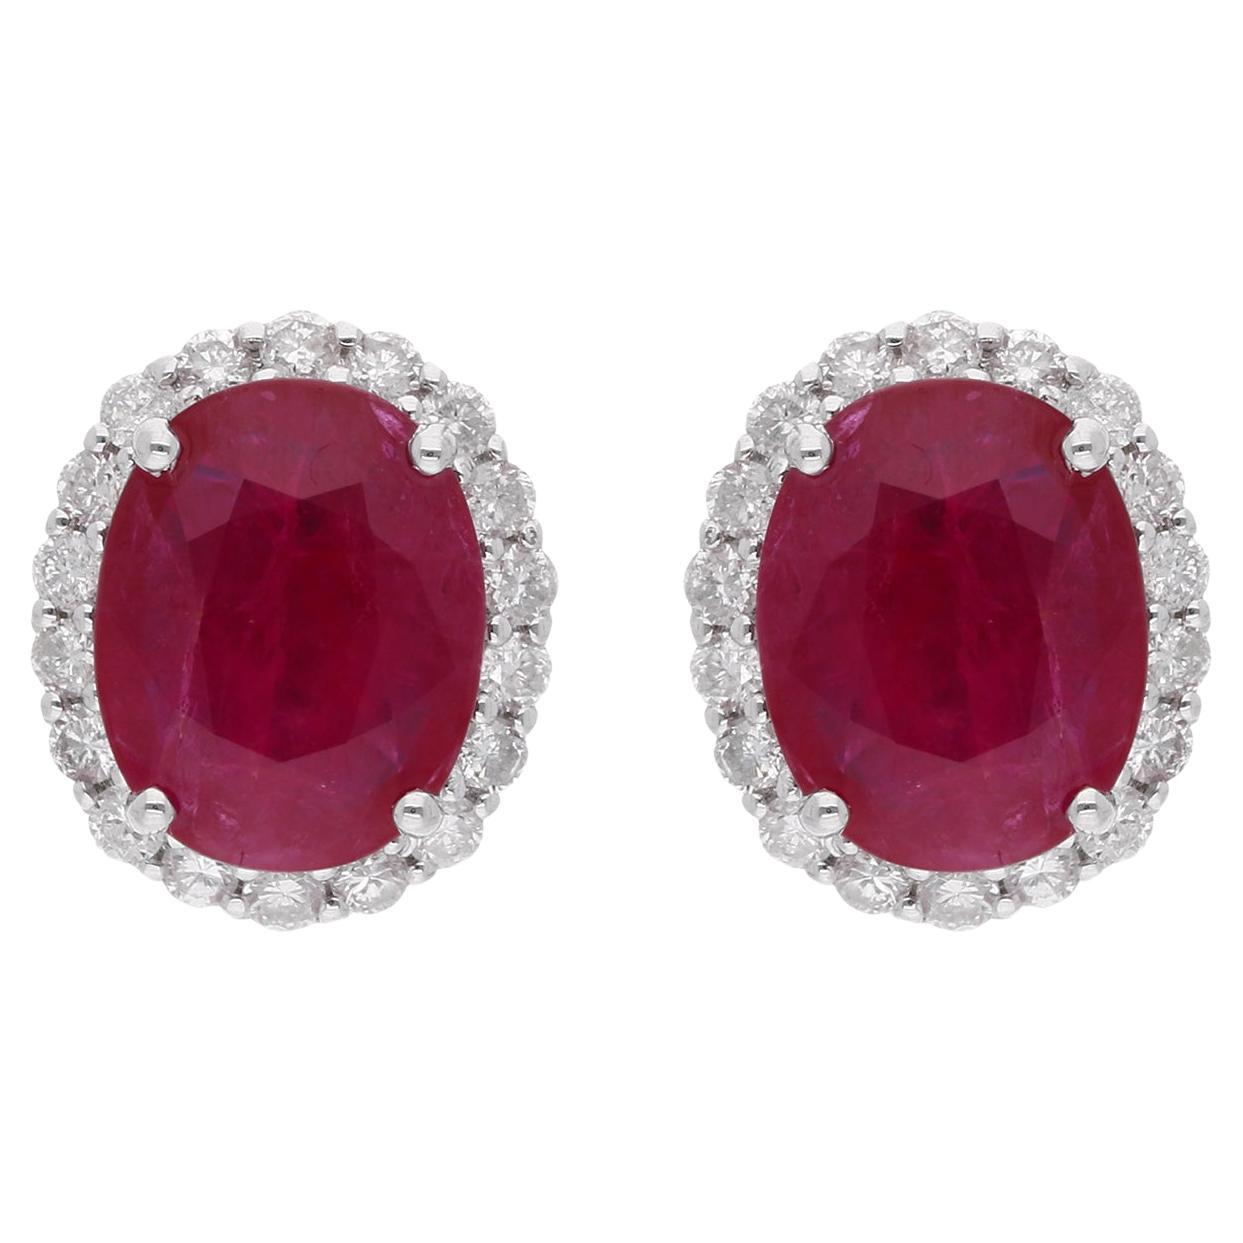 Oval Shape Ruby Gemstone Stud Earrings Diamond 18 Karat White Gold Fine Jewelry